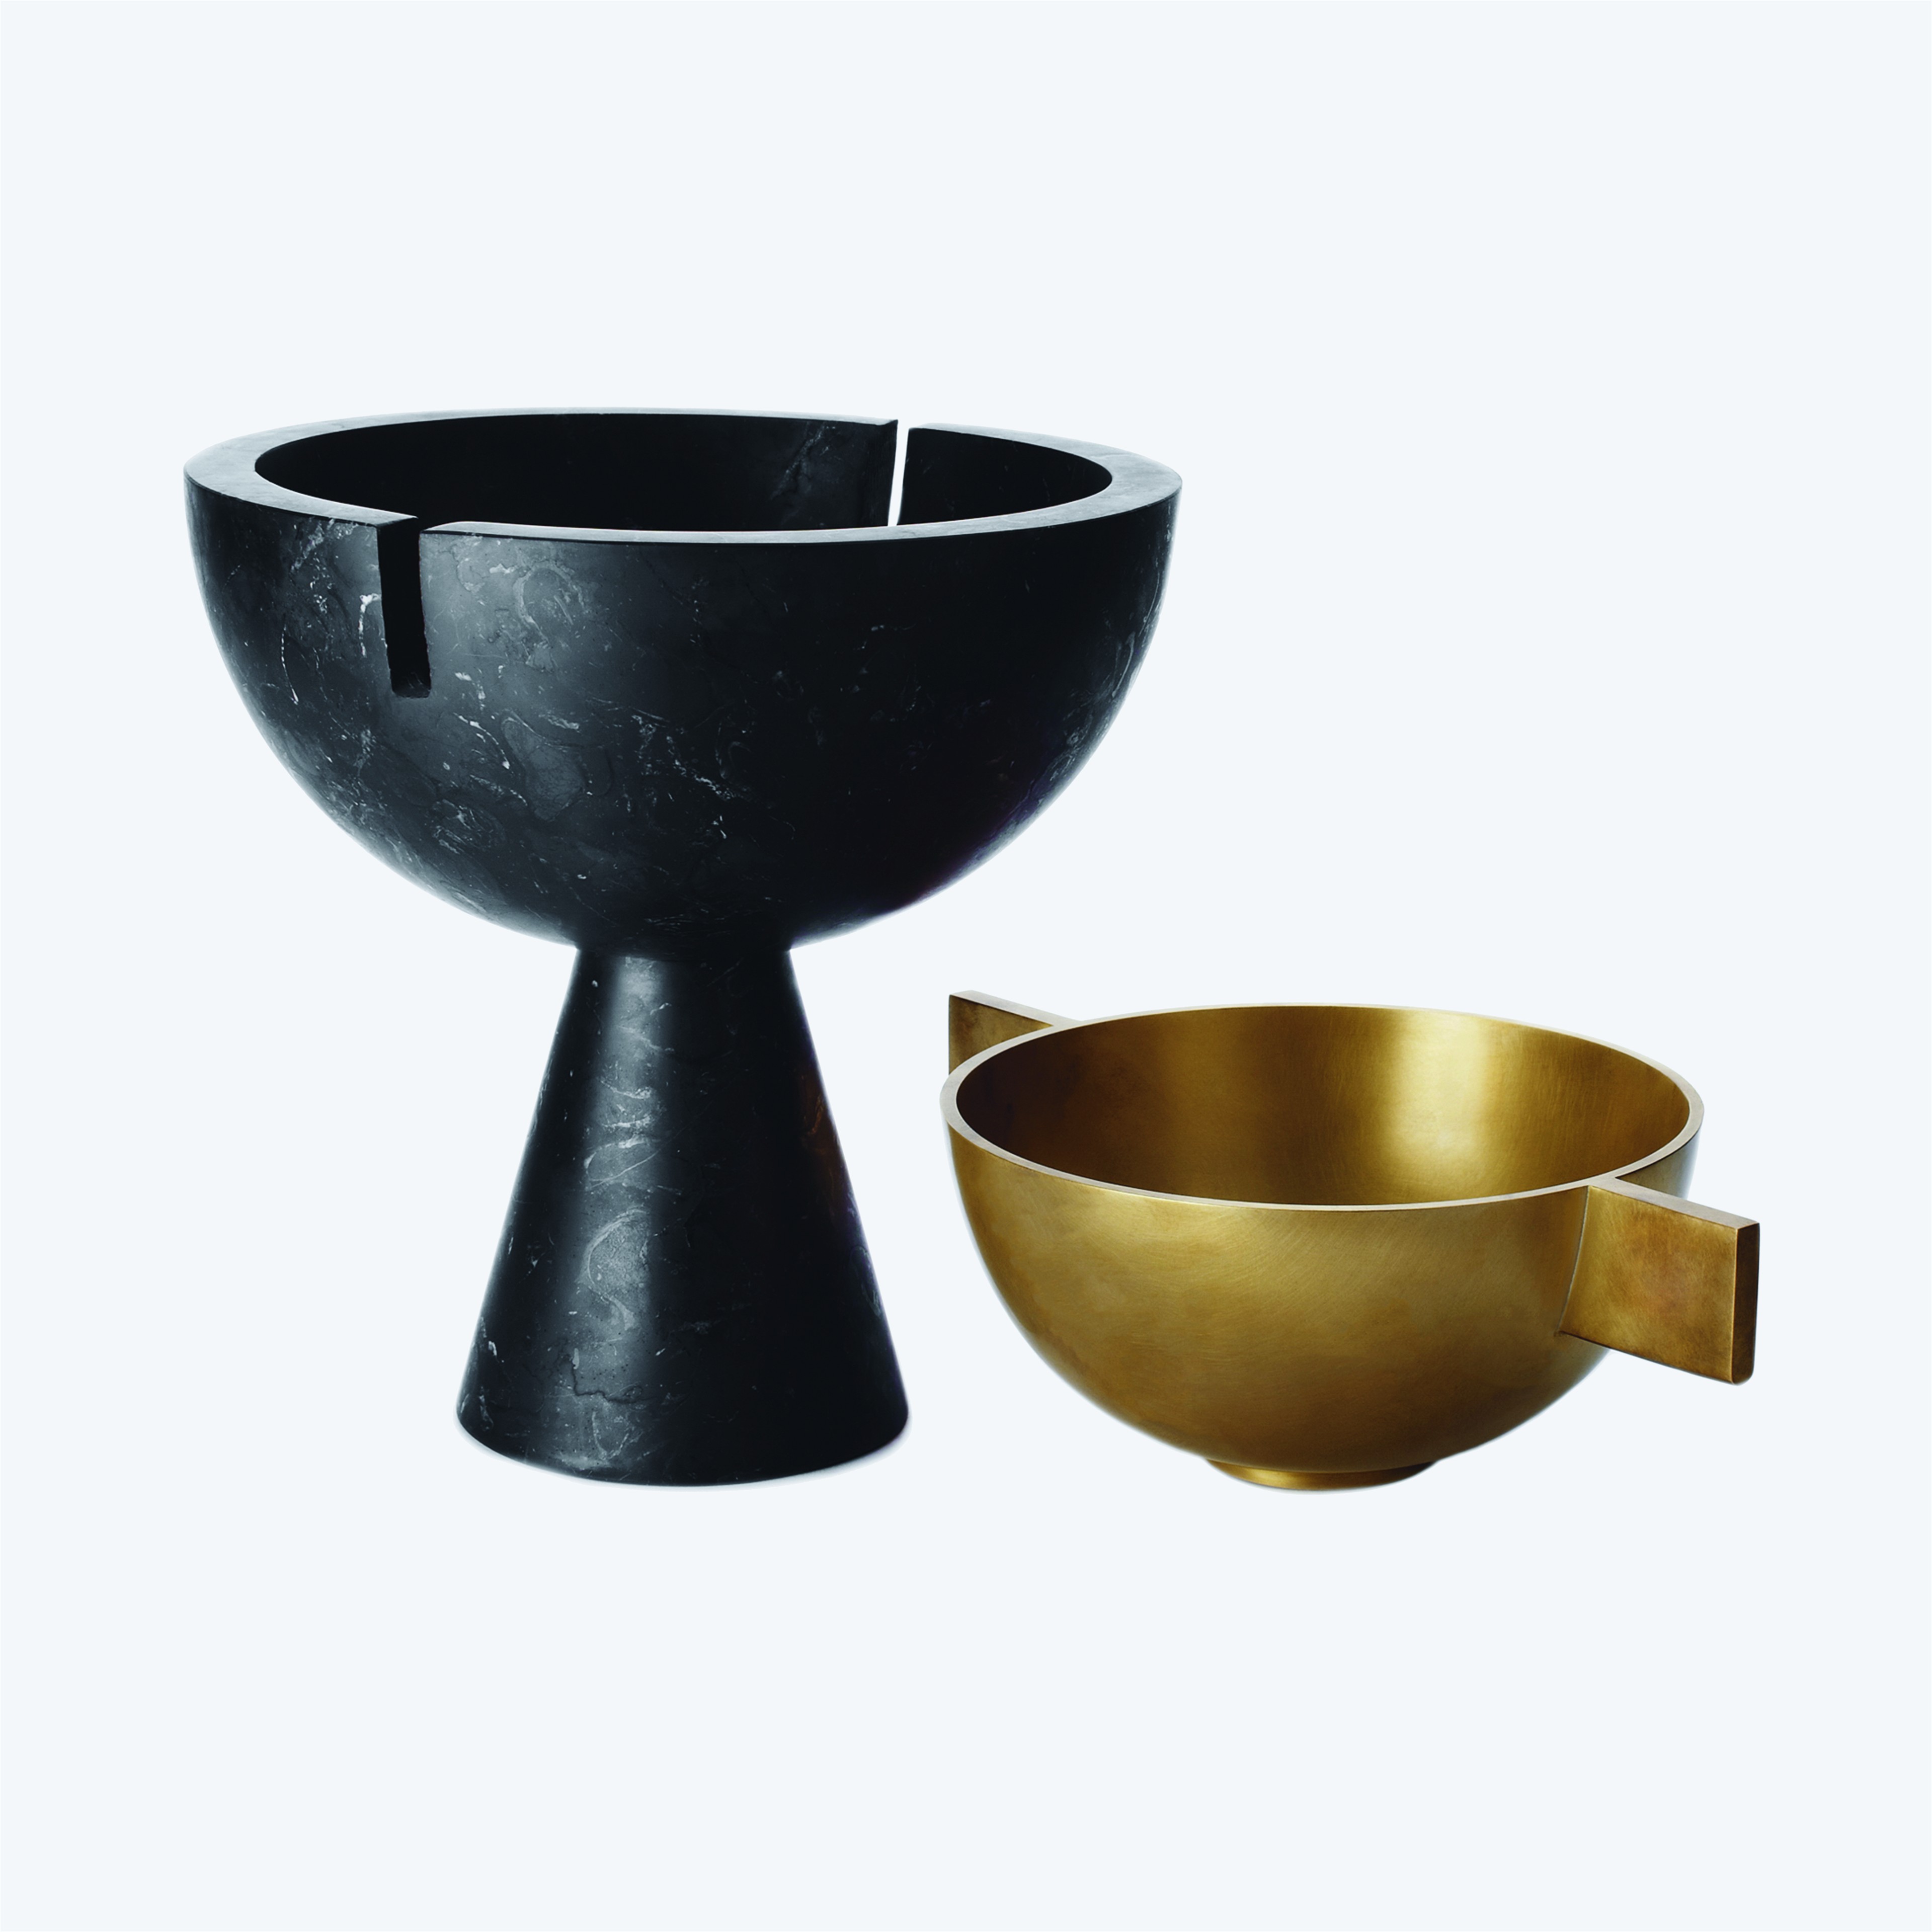 a black and gold bowl and a black and gold bowl